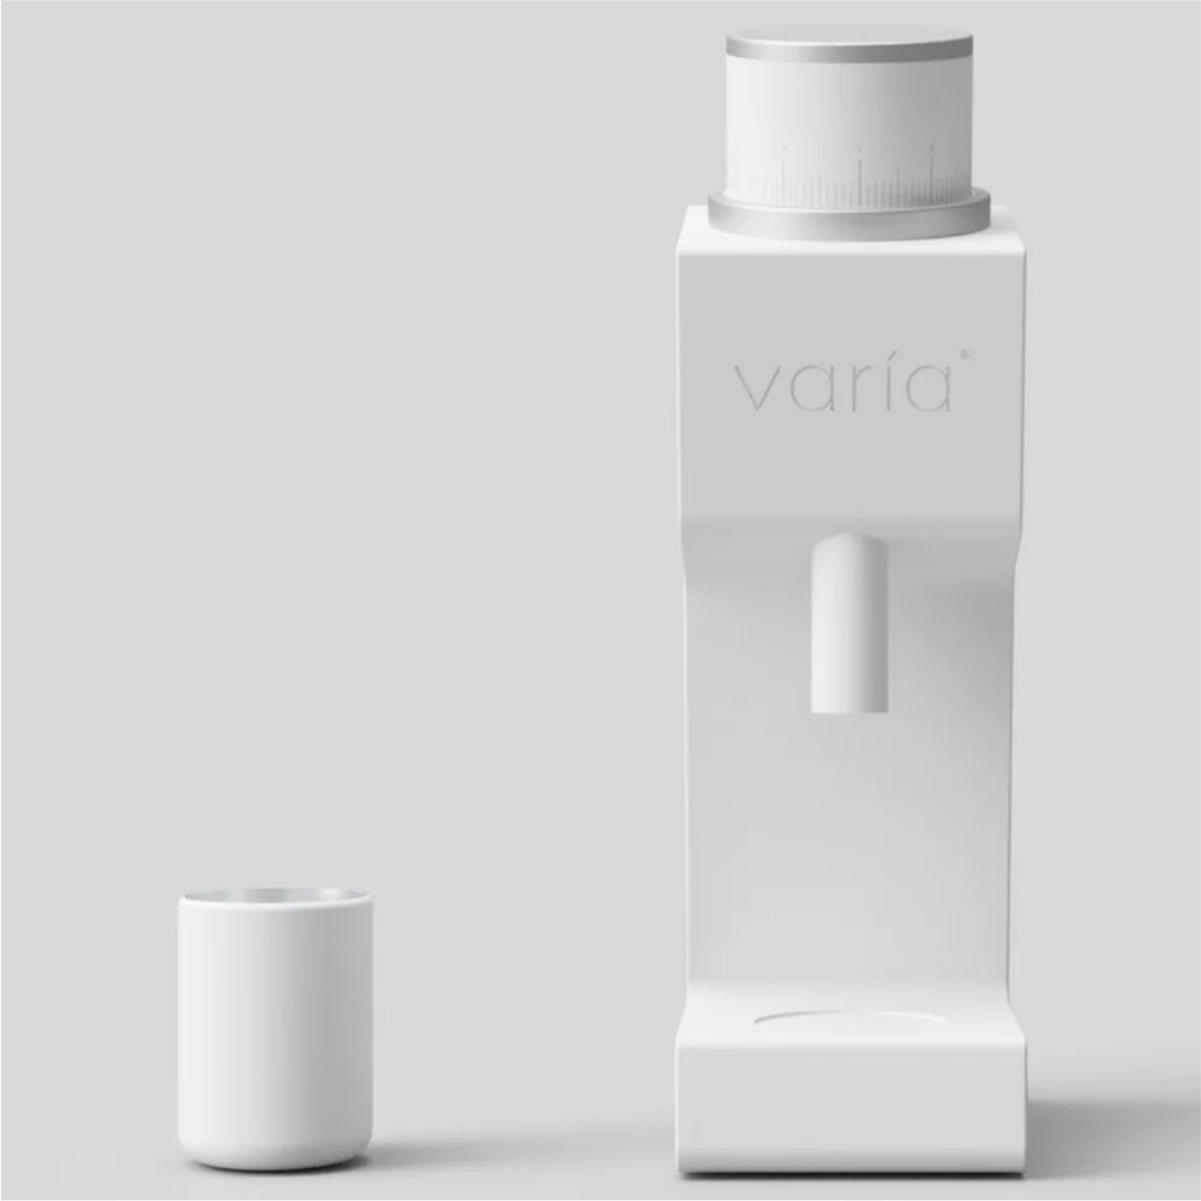 Varia VS3 Coffee Grinder 2nd Gen 120V (White)